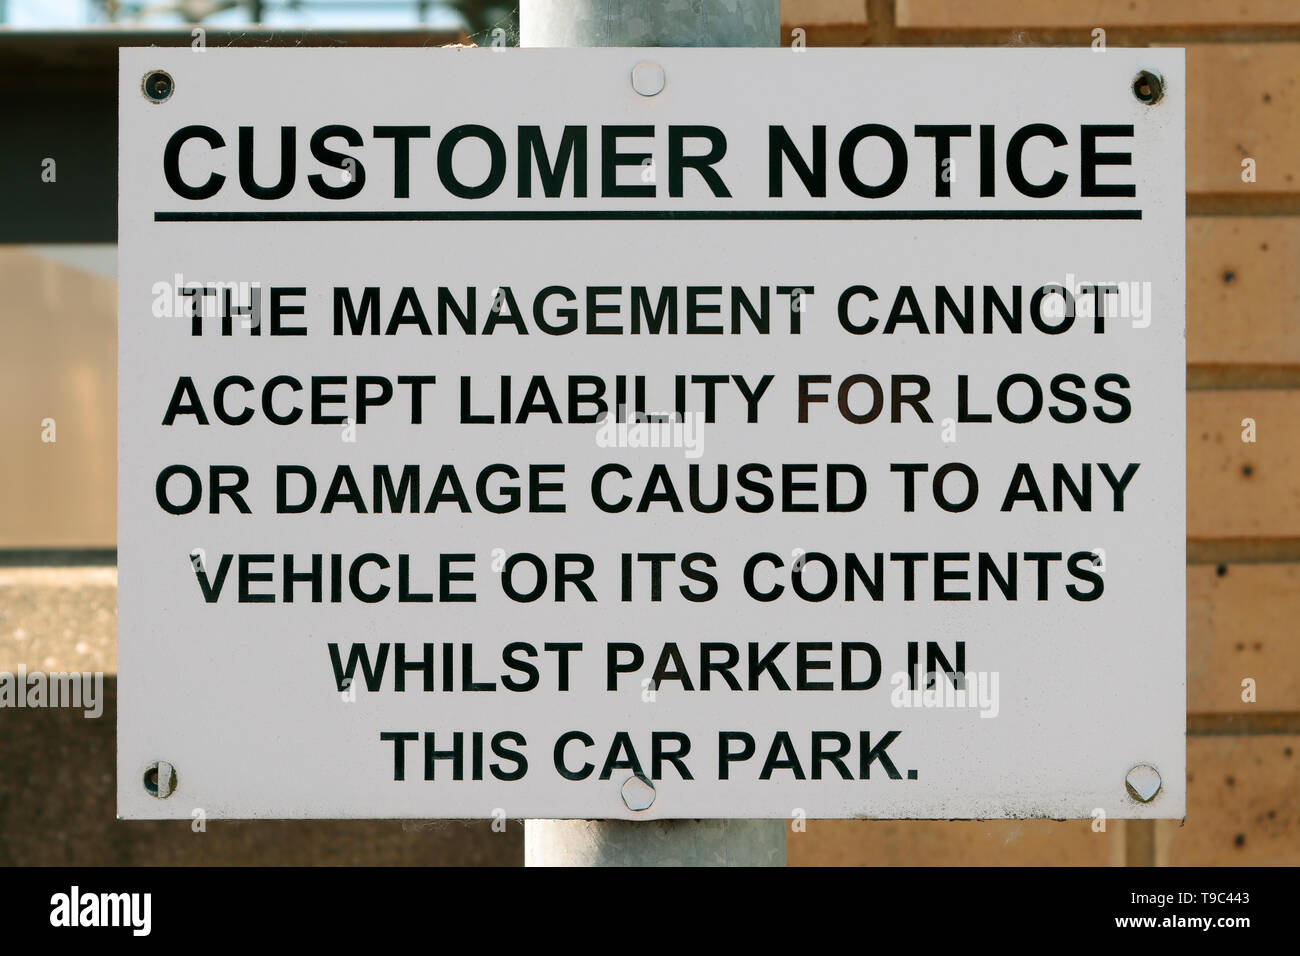 Avviso per i clienti - la gestione non può accettare alcuna responsabilità per perdita o damagecaused a qualsiasi veicolo o i suoi contenuti durante la sosta in questo parcheggio auto. Foto Stock